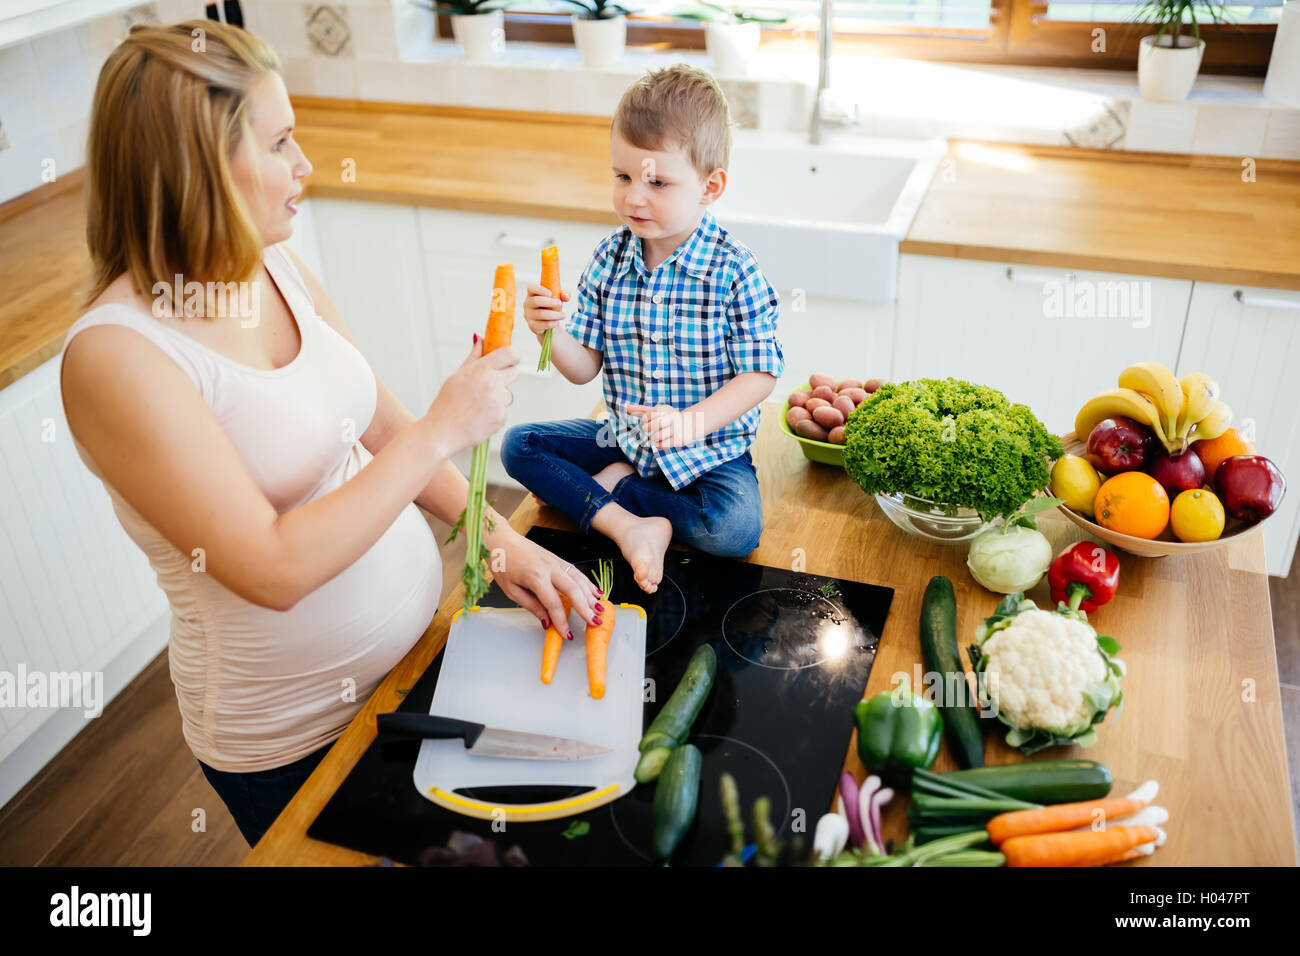 La madre e il bambino a preparare il pranzo in cucina Foto Stock